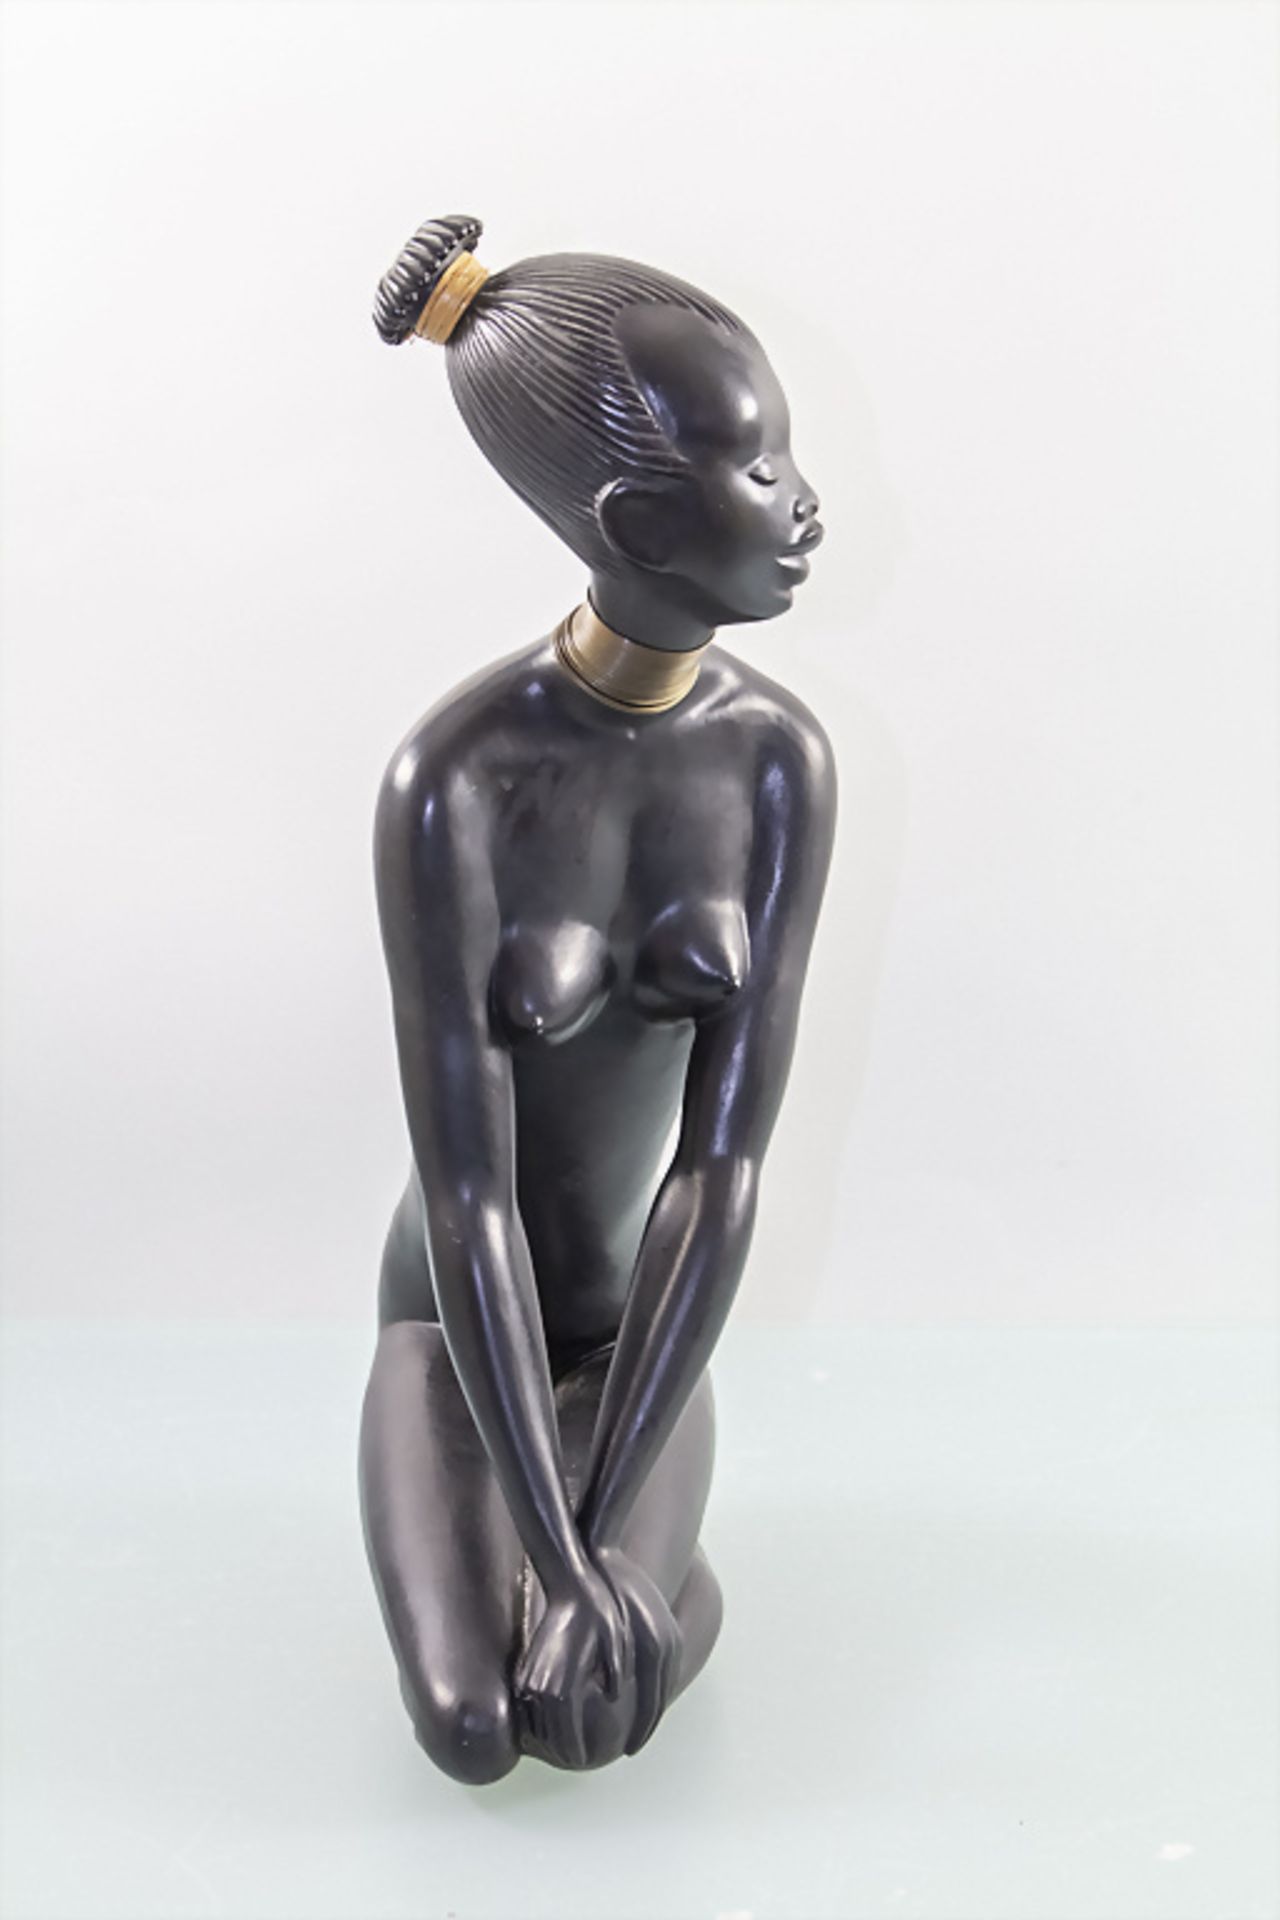 Keramik Skulptur 'Kniende Afrikanerin', Keramos Wien, Östereich, 1950er Jahre - Image 2 of 4